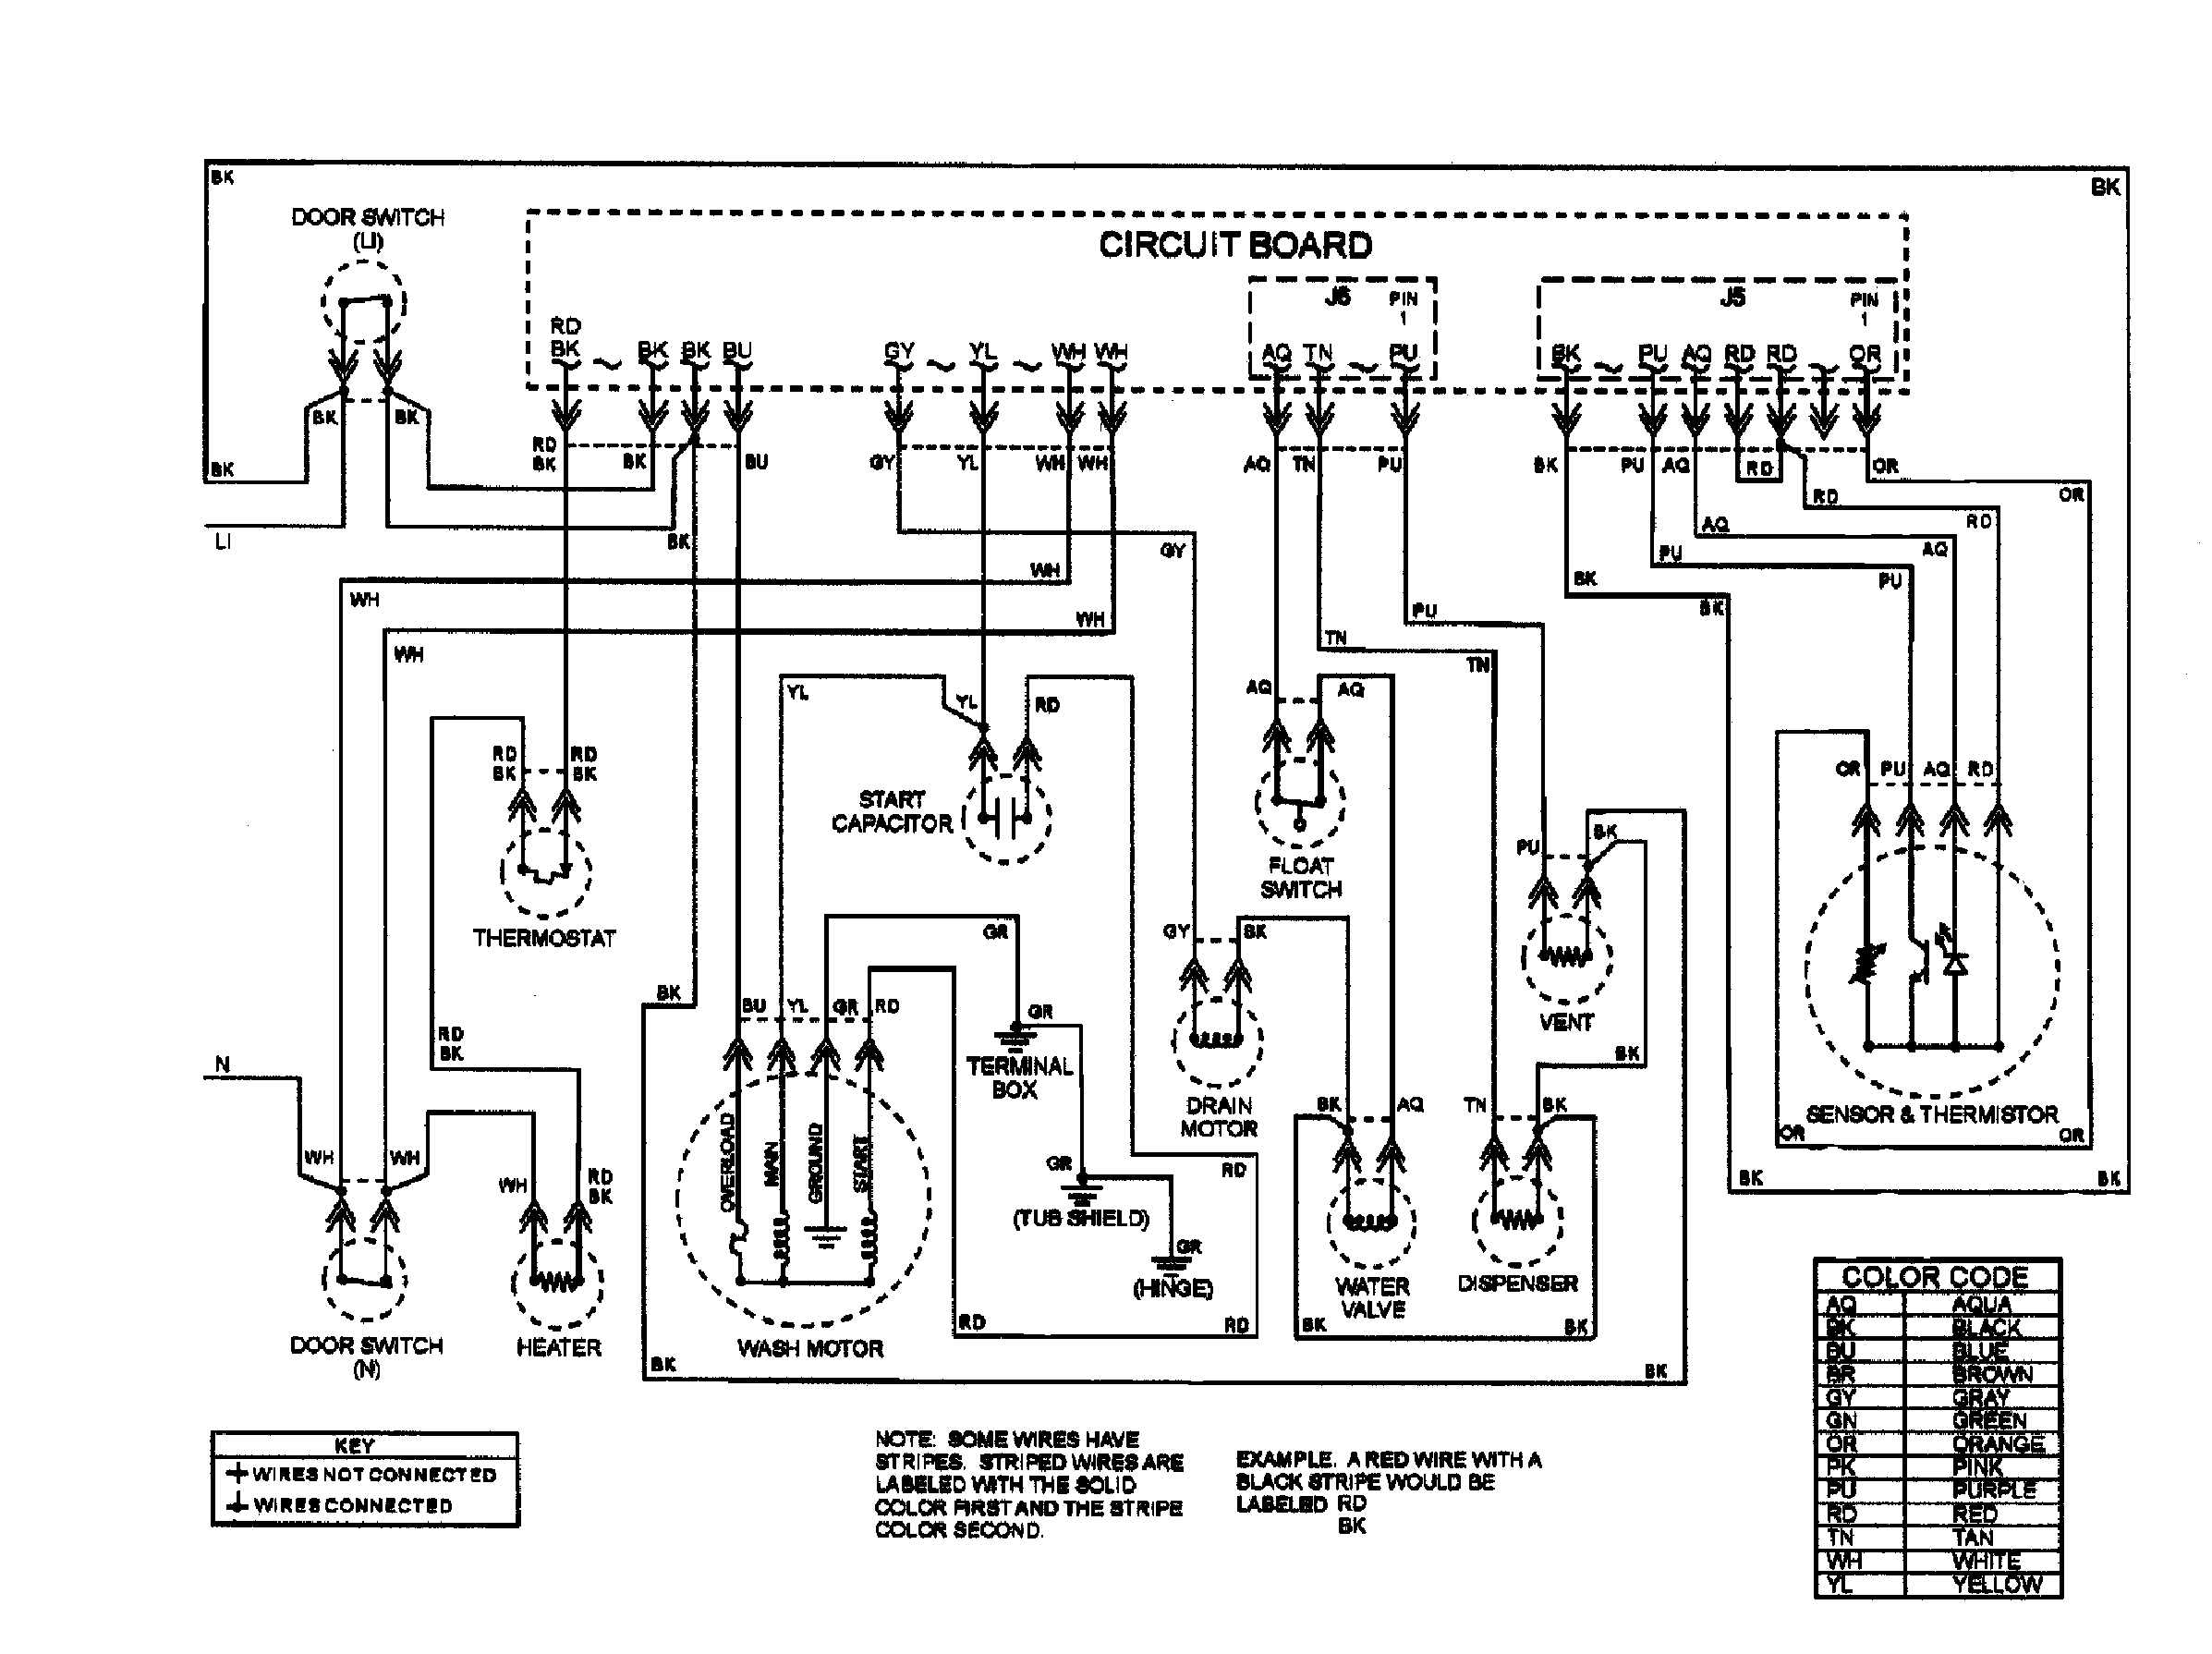 maytag dishwasher schematic